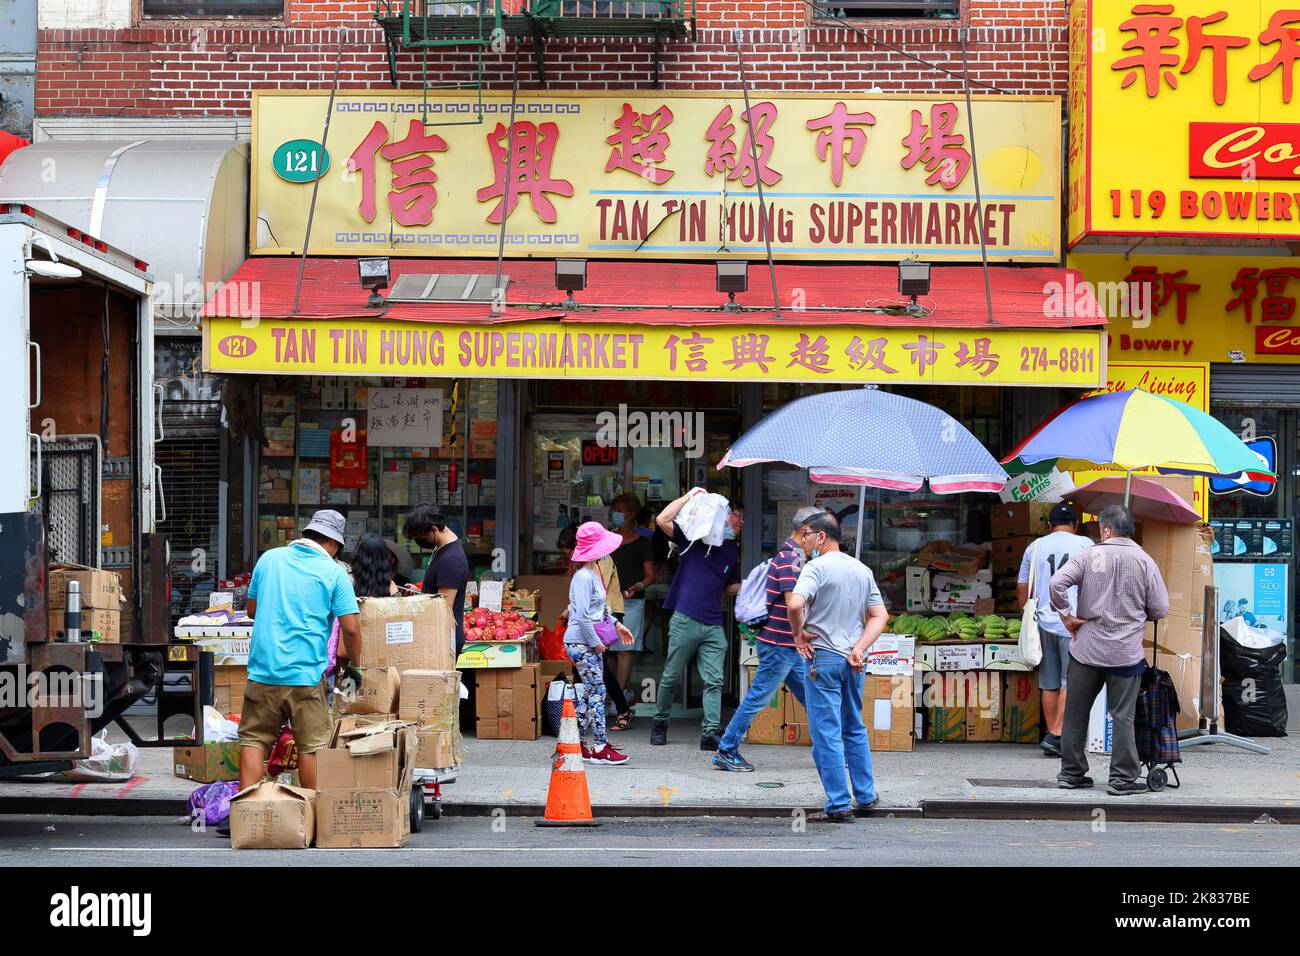 Tan Tin Hung Supermarket 信興超級市場, 121 Bowery, New York, NYC Schaufenster Foto eines südostasiatischen Lebensmittelladens in Manhattan Chinatown. Stockfoto